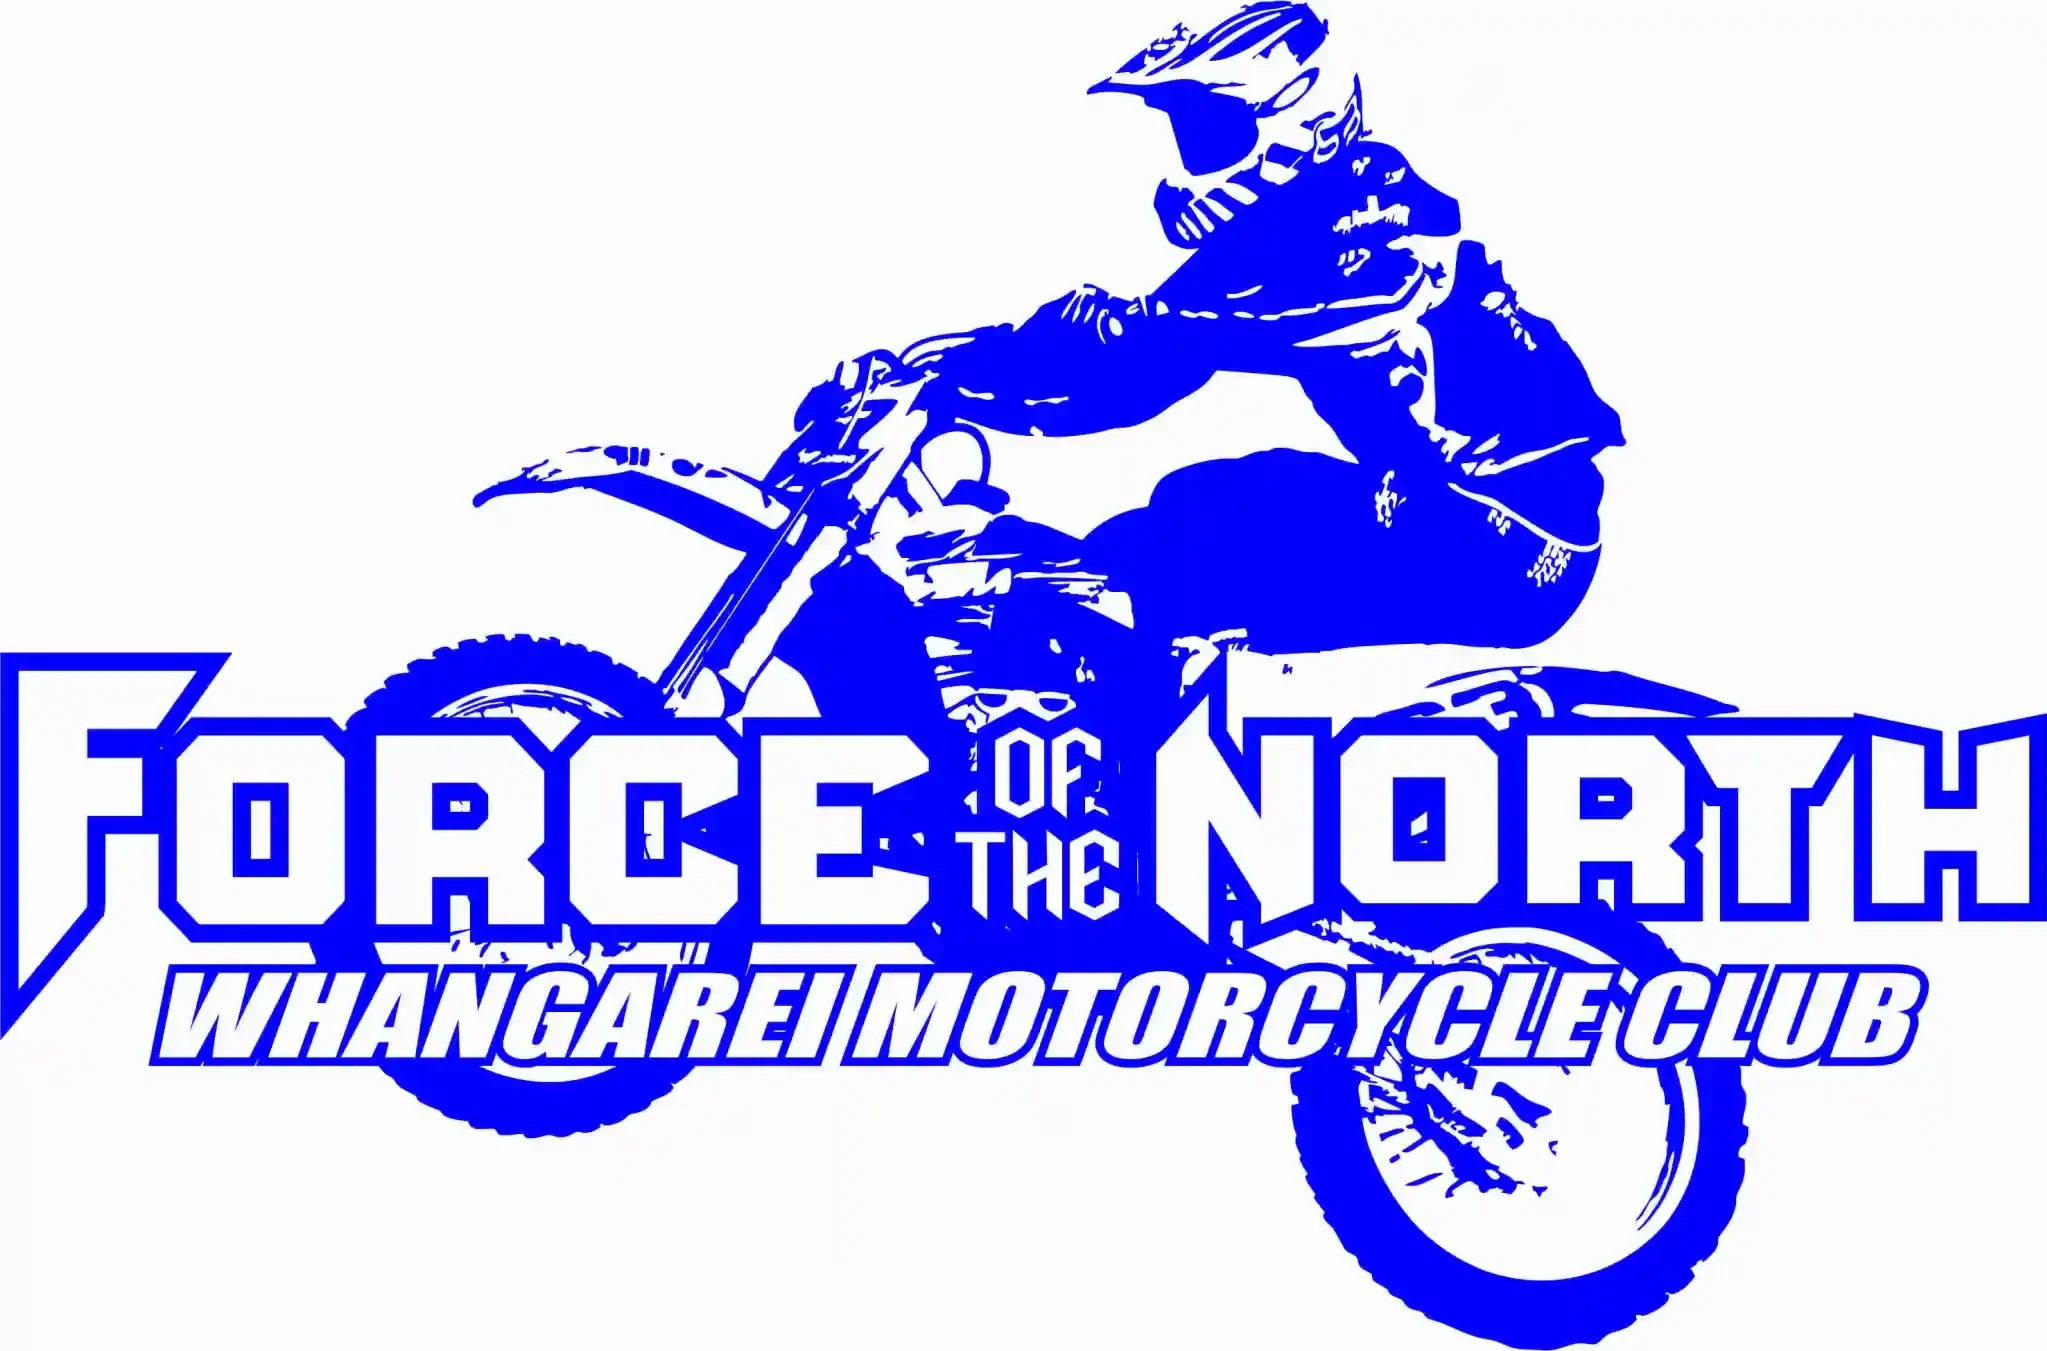 Whangarei Motorcycle Club